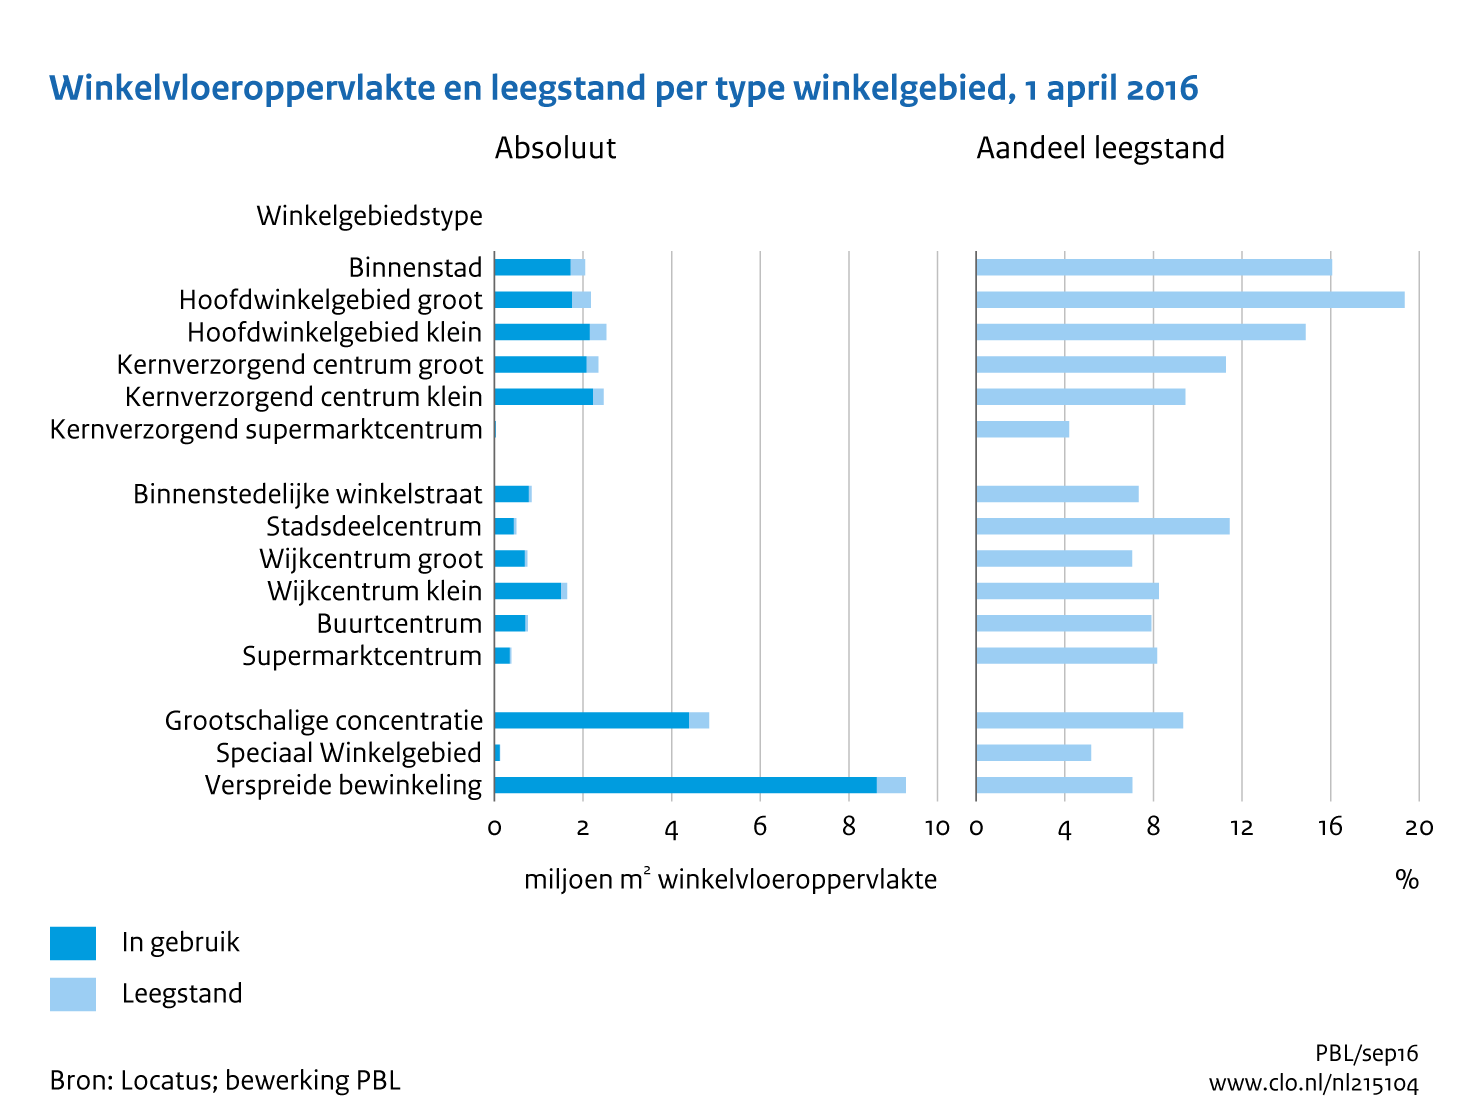 Figuur Winkelvloeroppervlakte en leegstand per type winkelgebied, 1 april 2016. In de rest van de tekst wordt deze figuur uitgebreider uitgelegd.